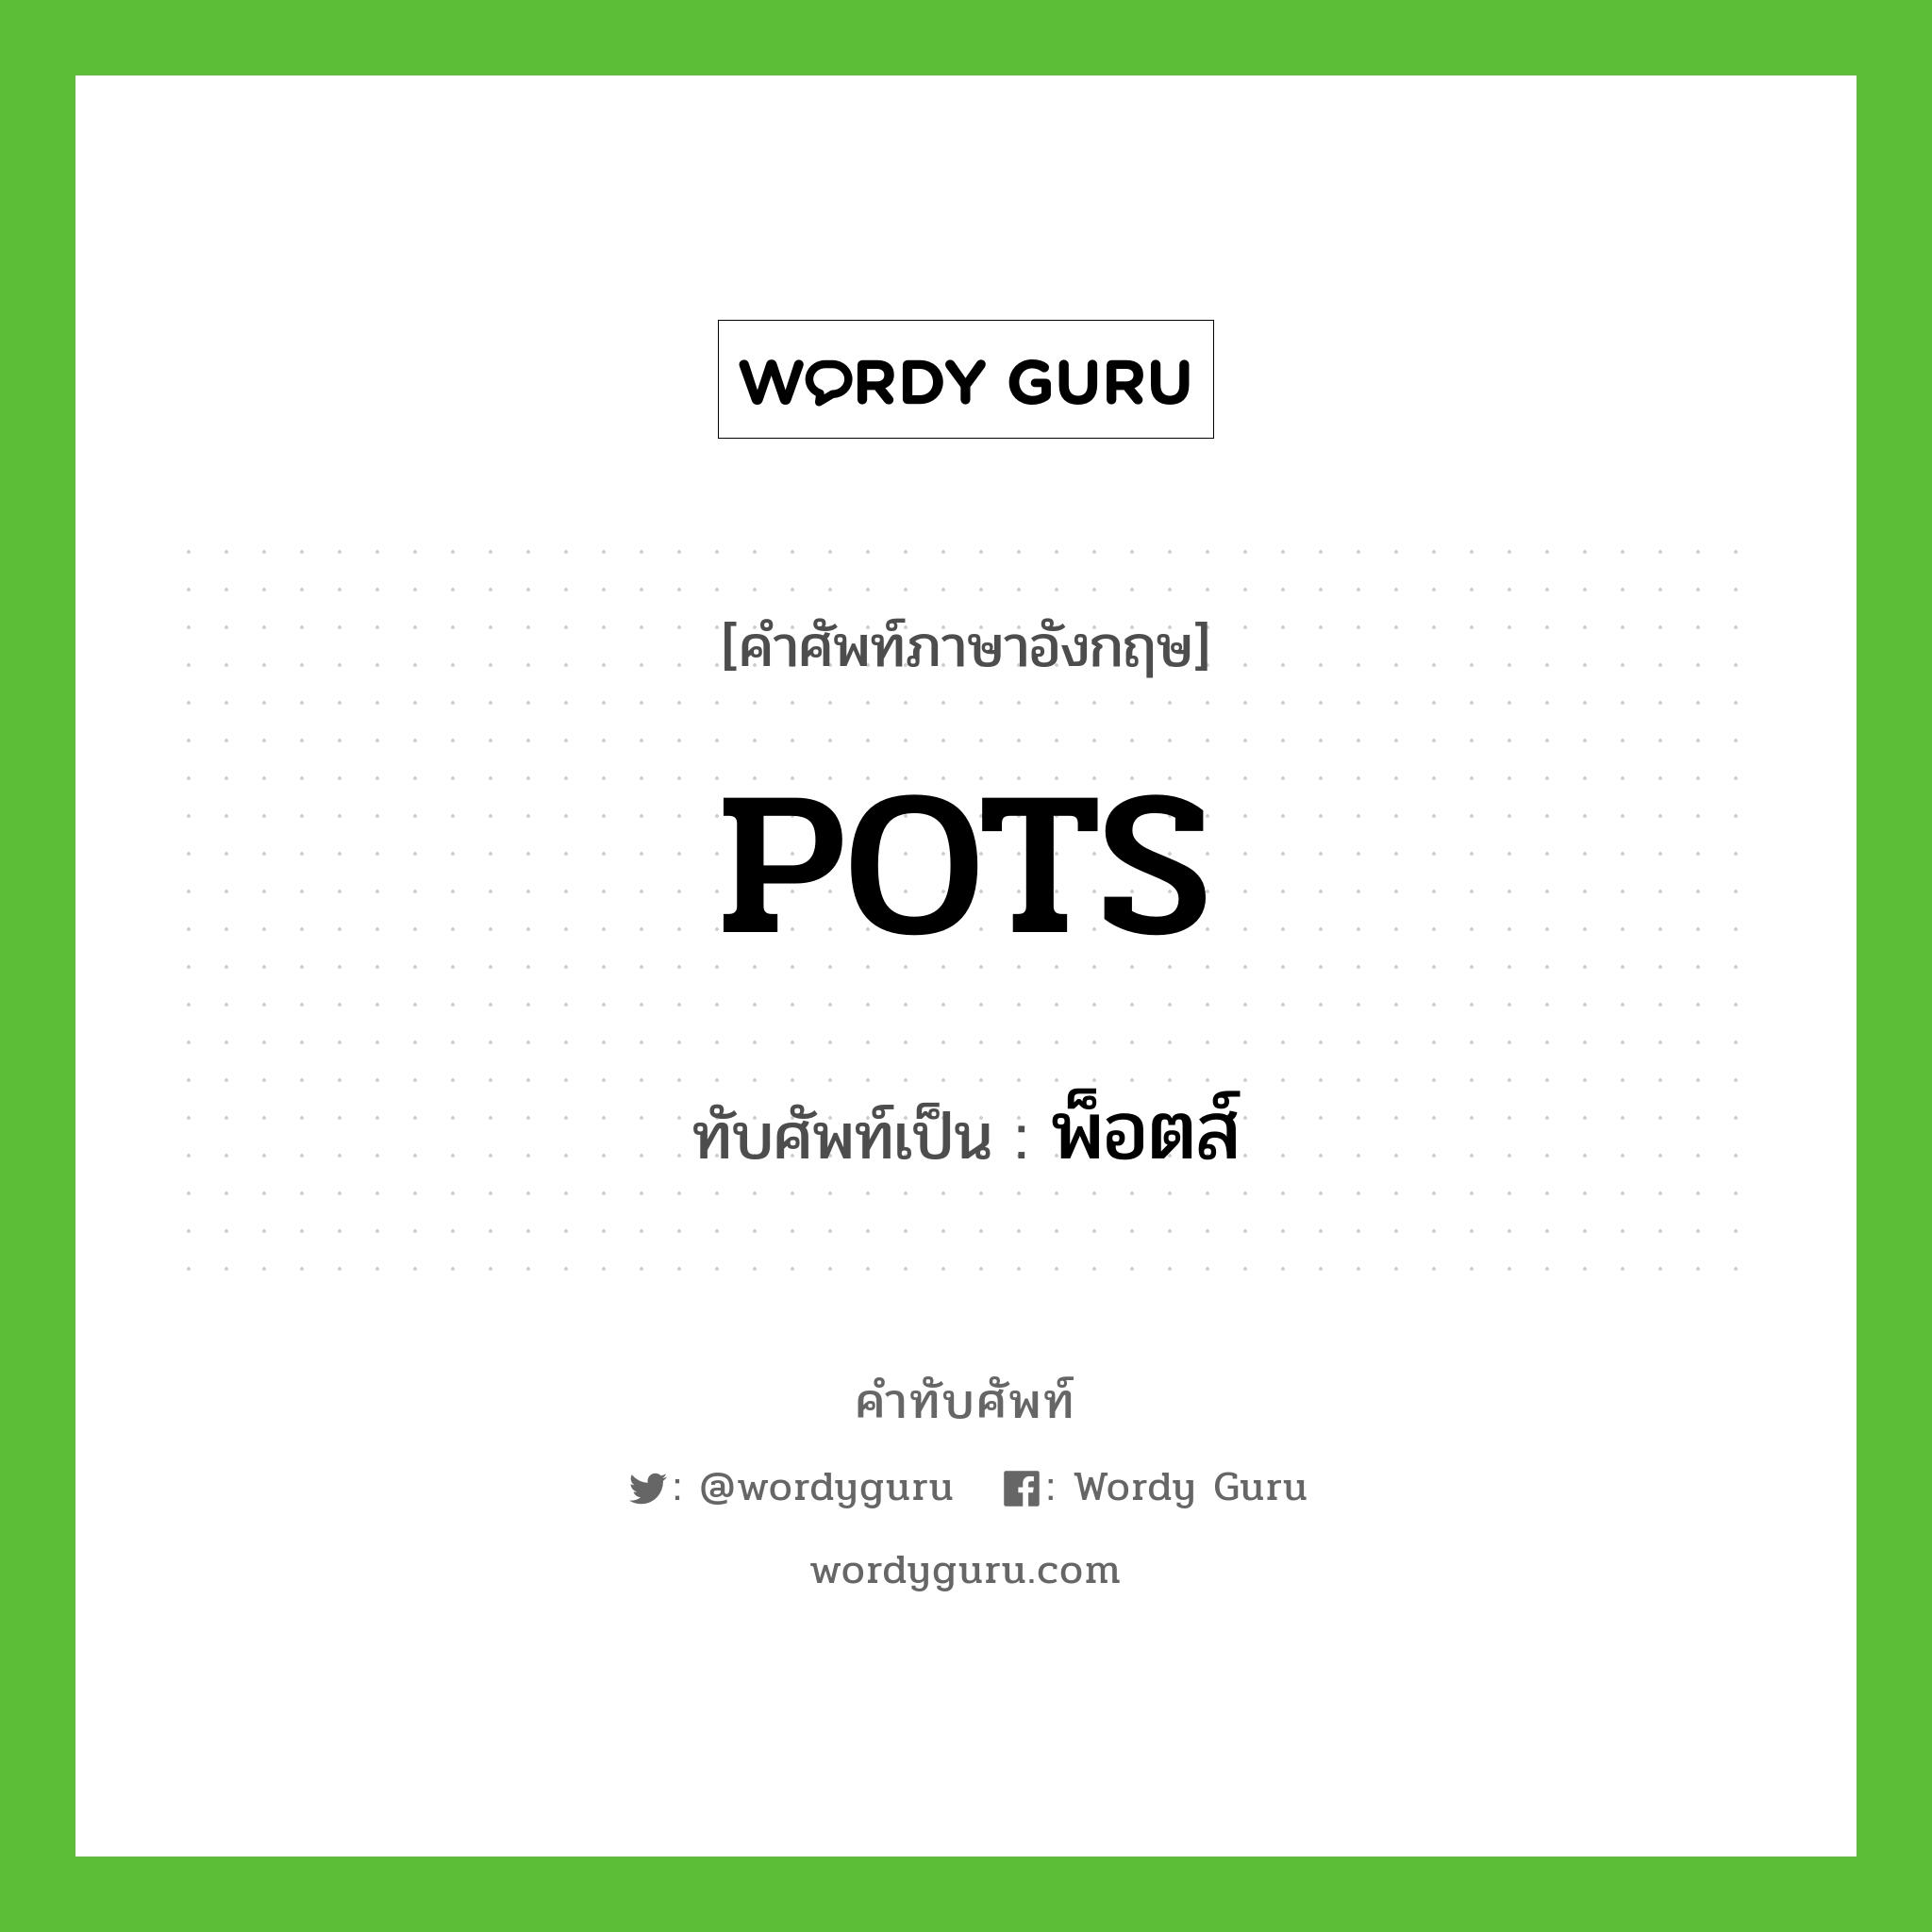 POTS เขียนเป็นคำไทยว่าอะไร?, คำศัพท์ภาษาอังกฤษ POTS ทับศัพท์เป็น พ็อตส์